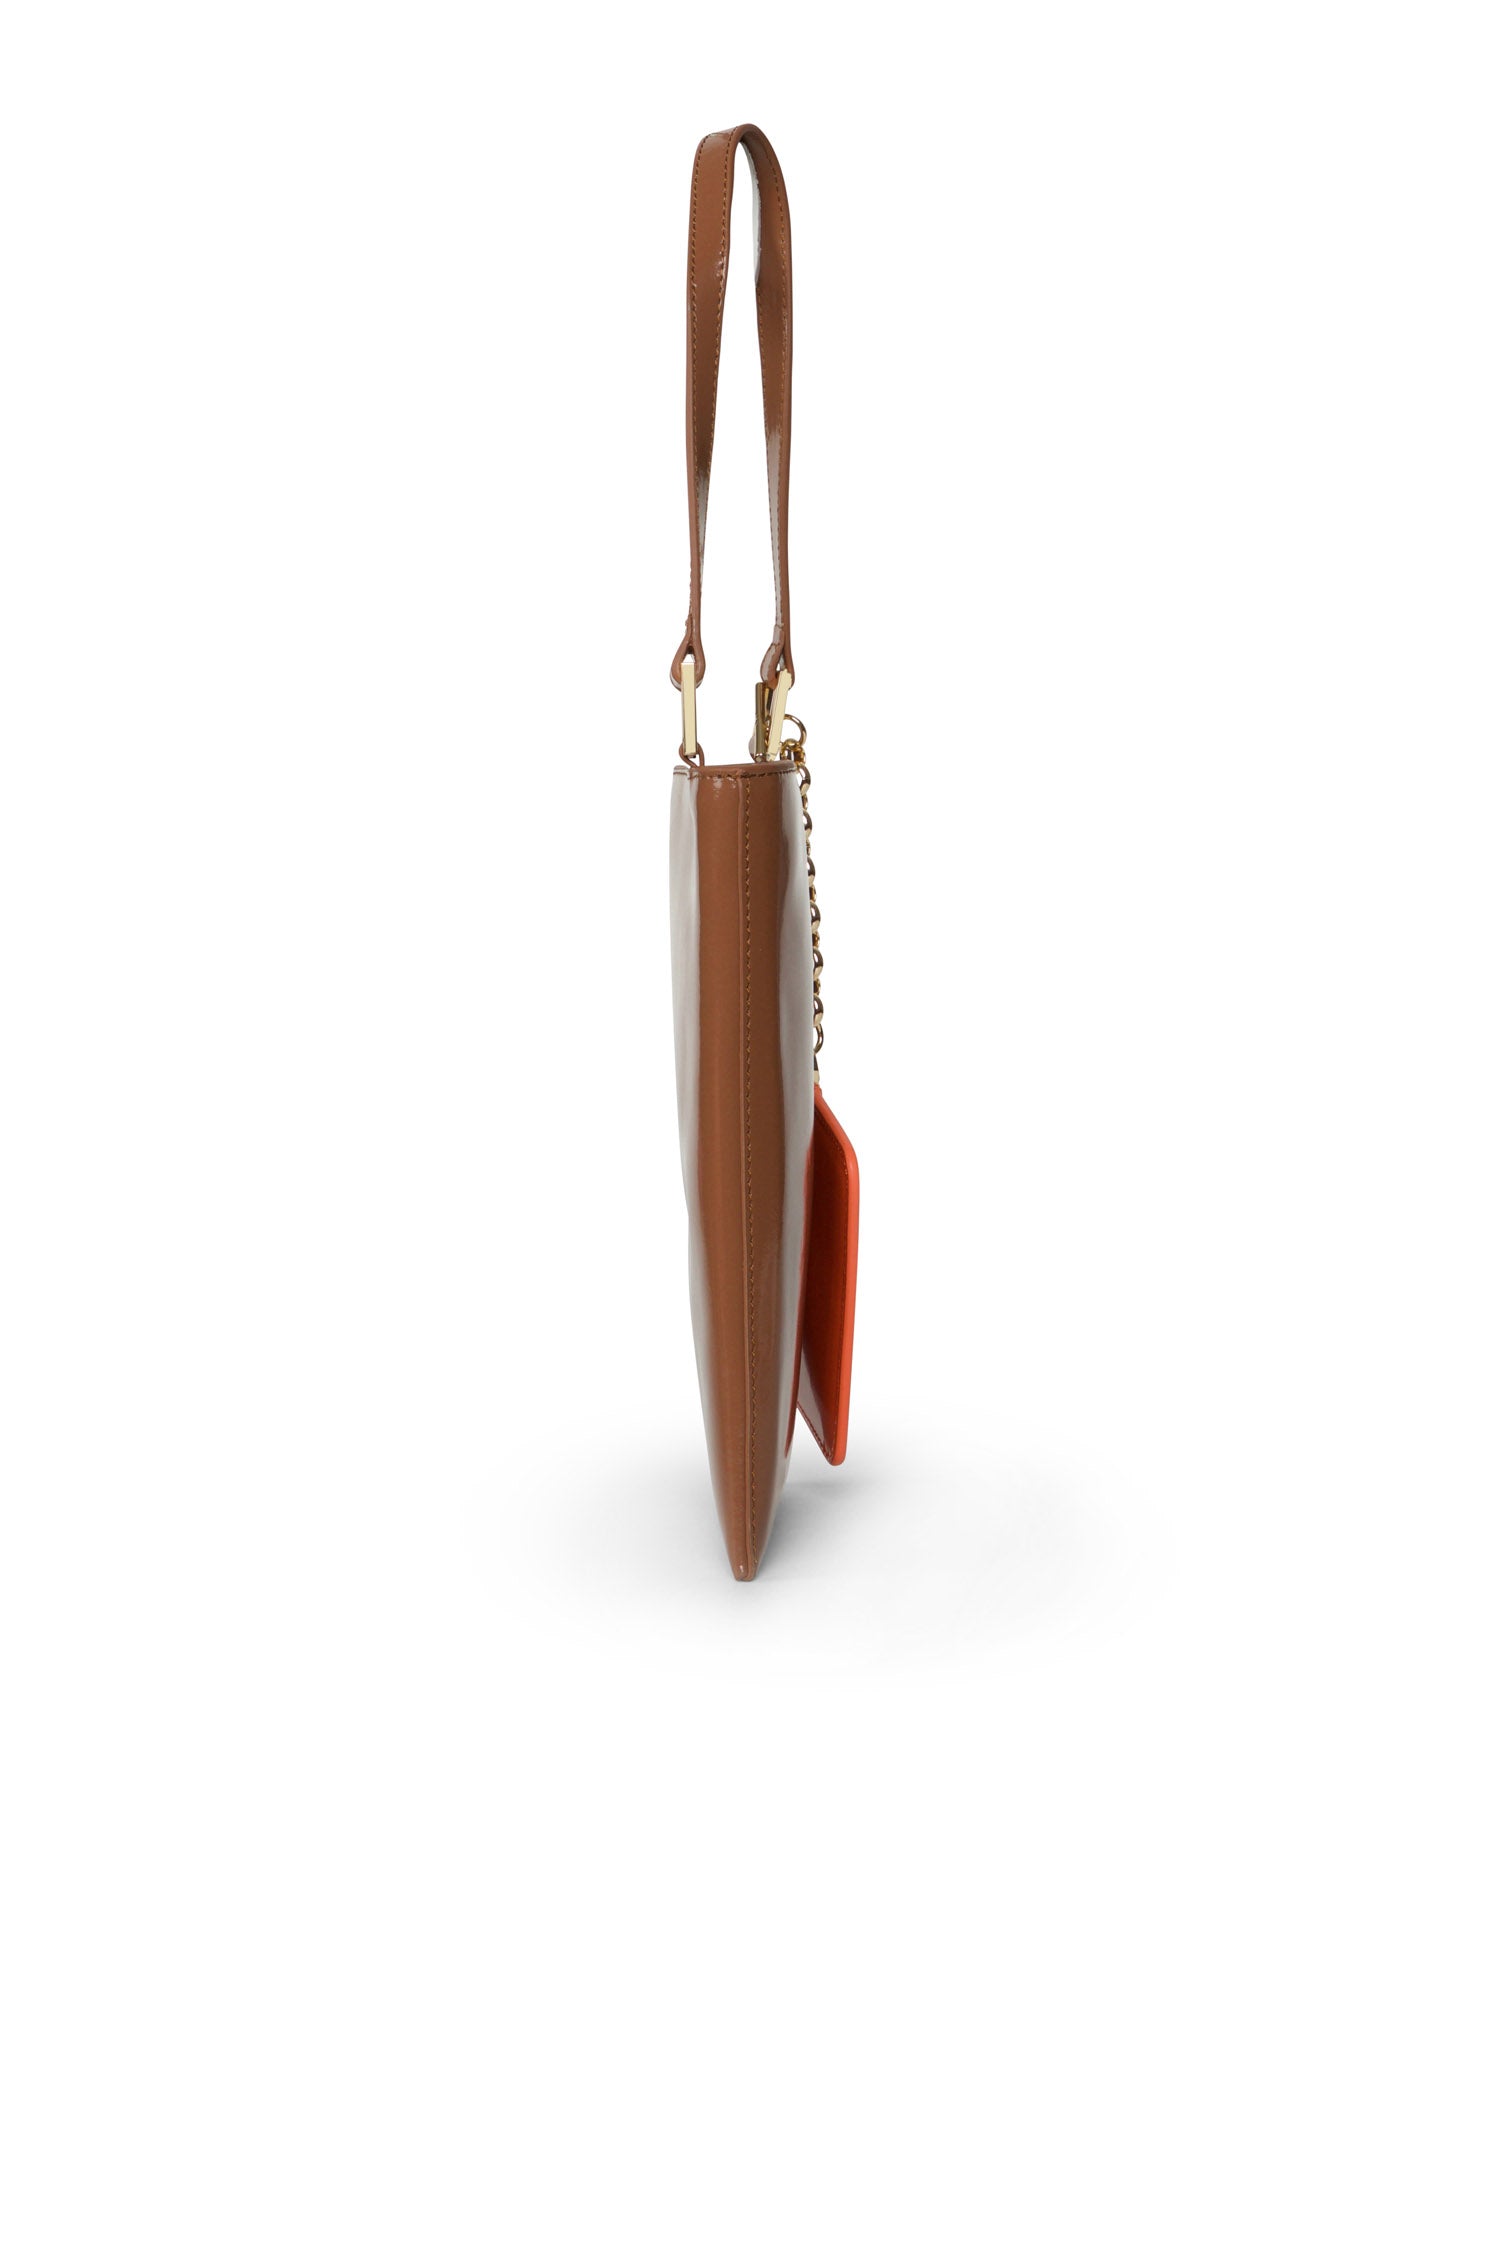 SAMPLE - The Ella Patent Phone Bag Chocolate